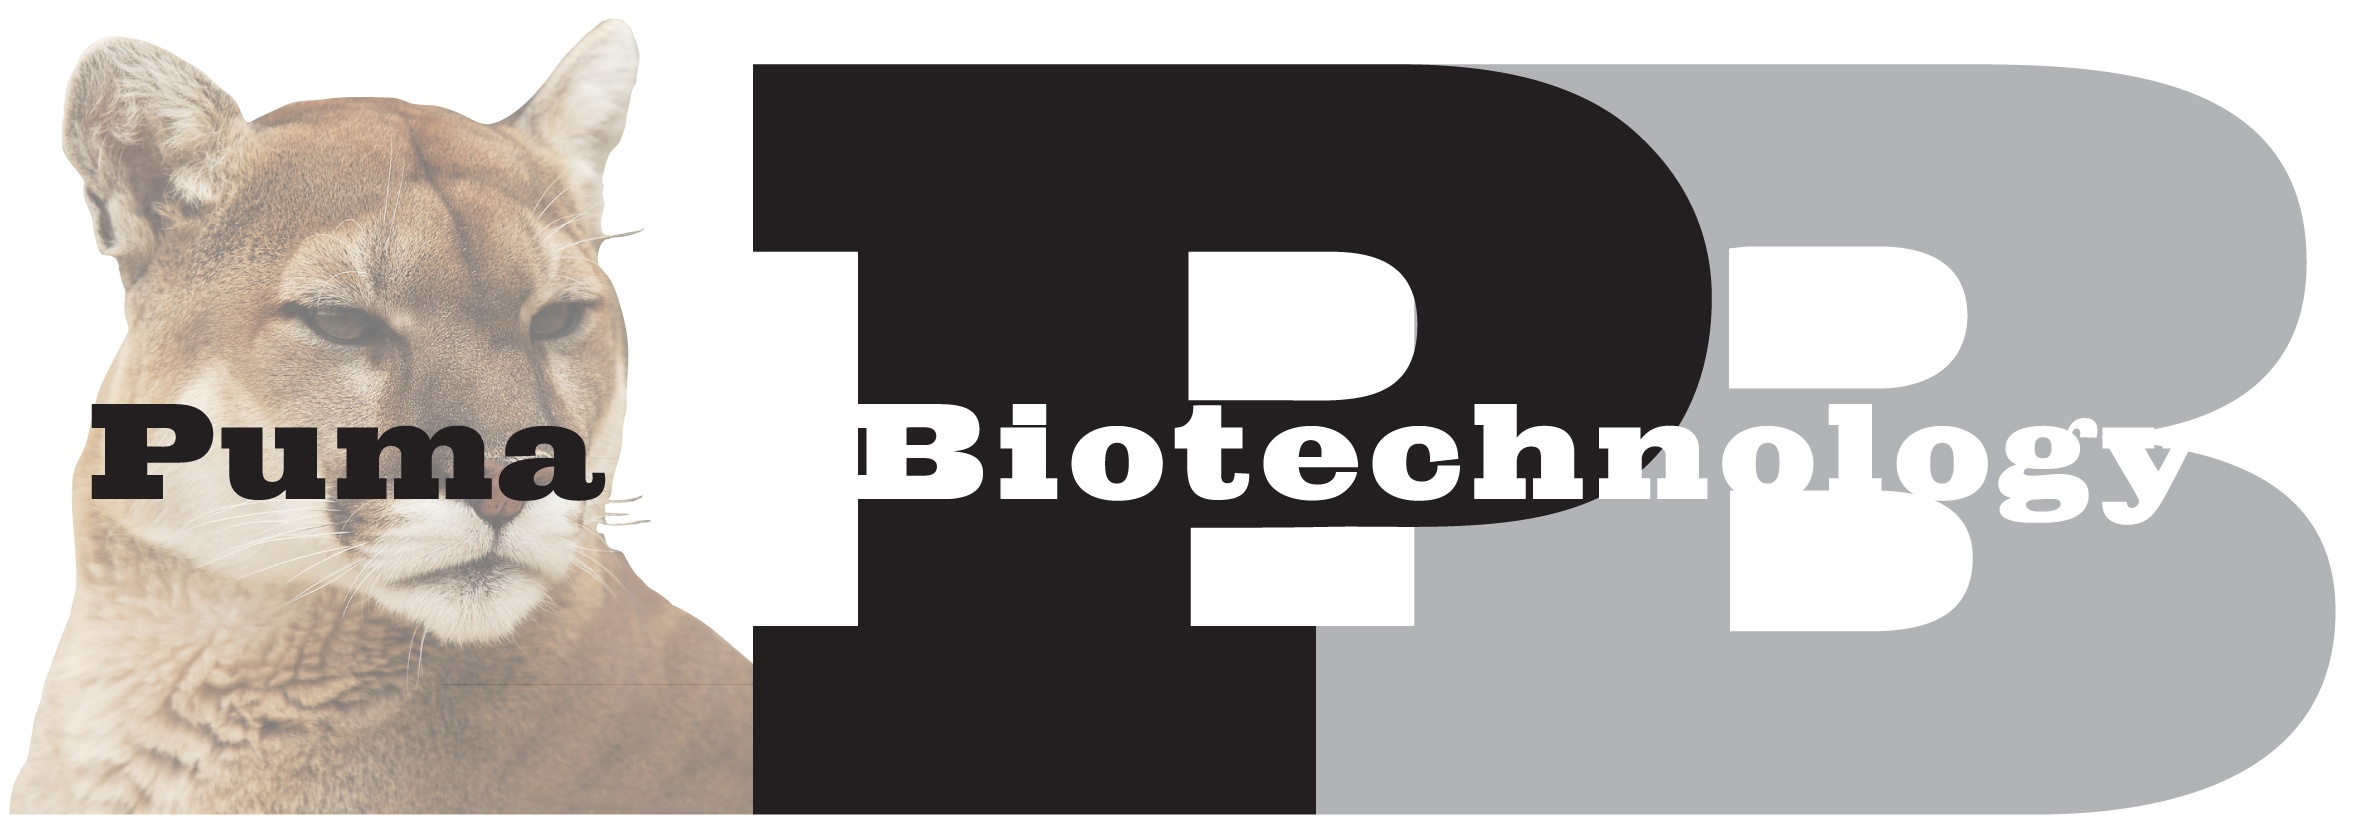 puma biotechnology stock